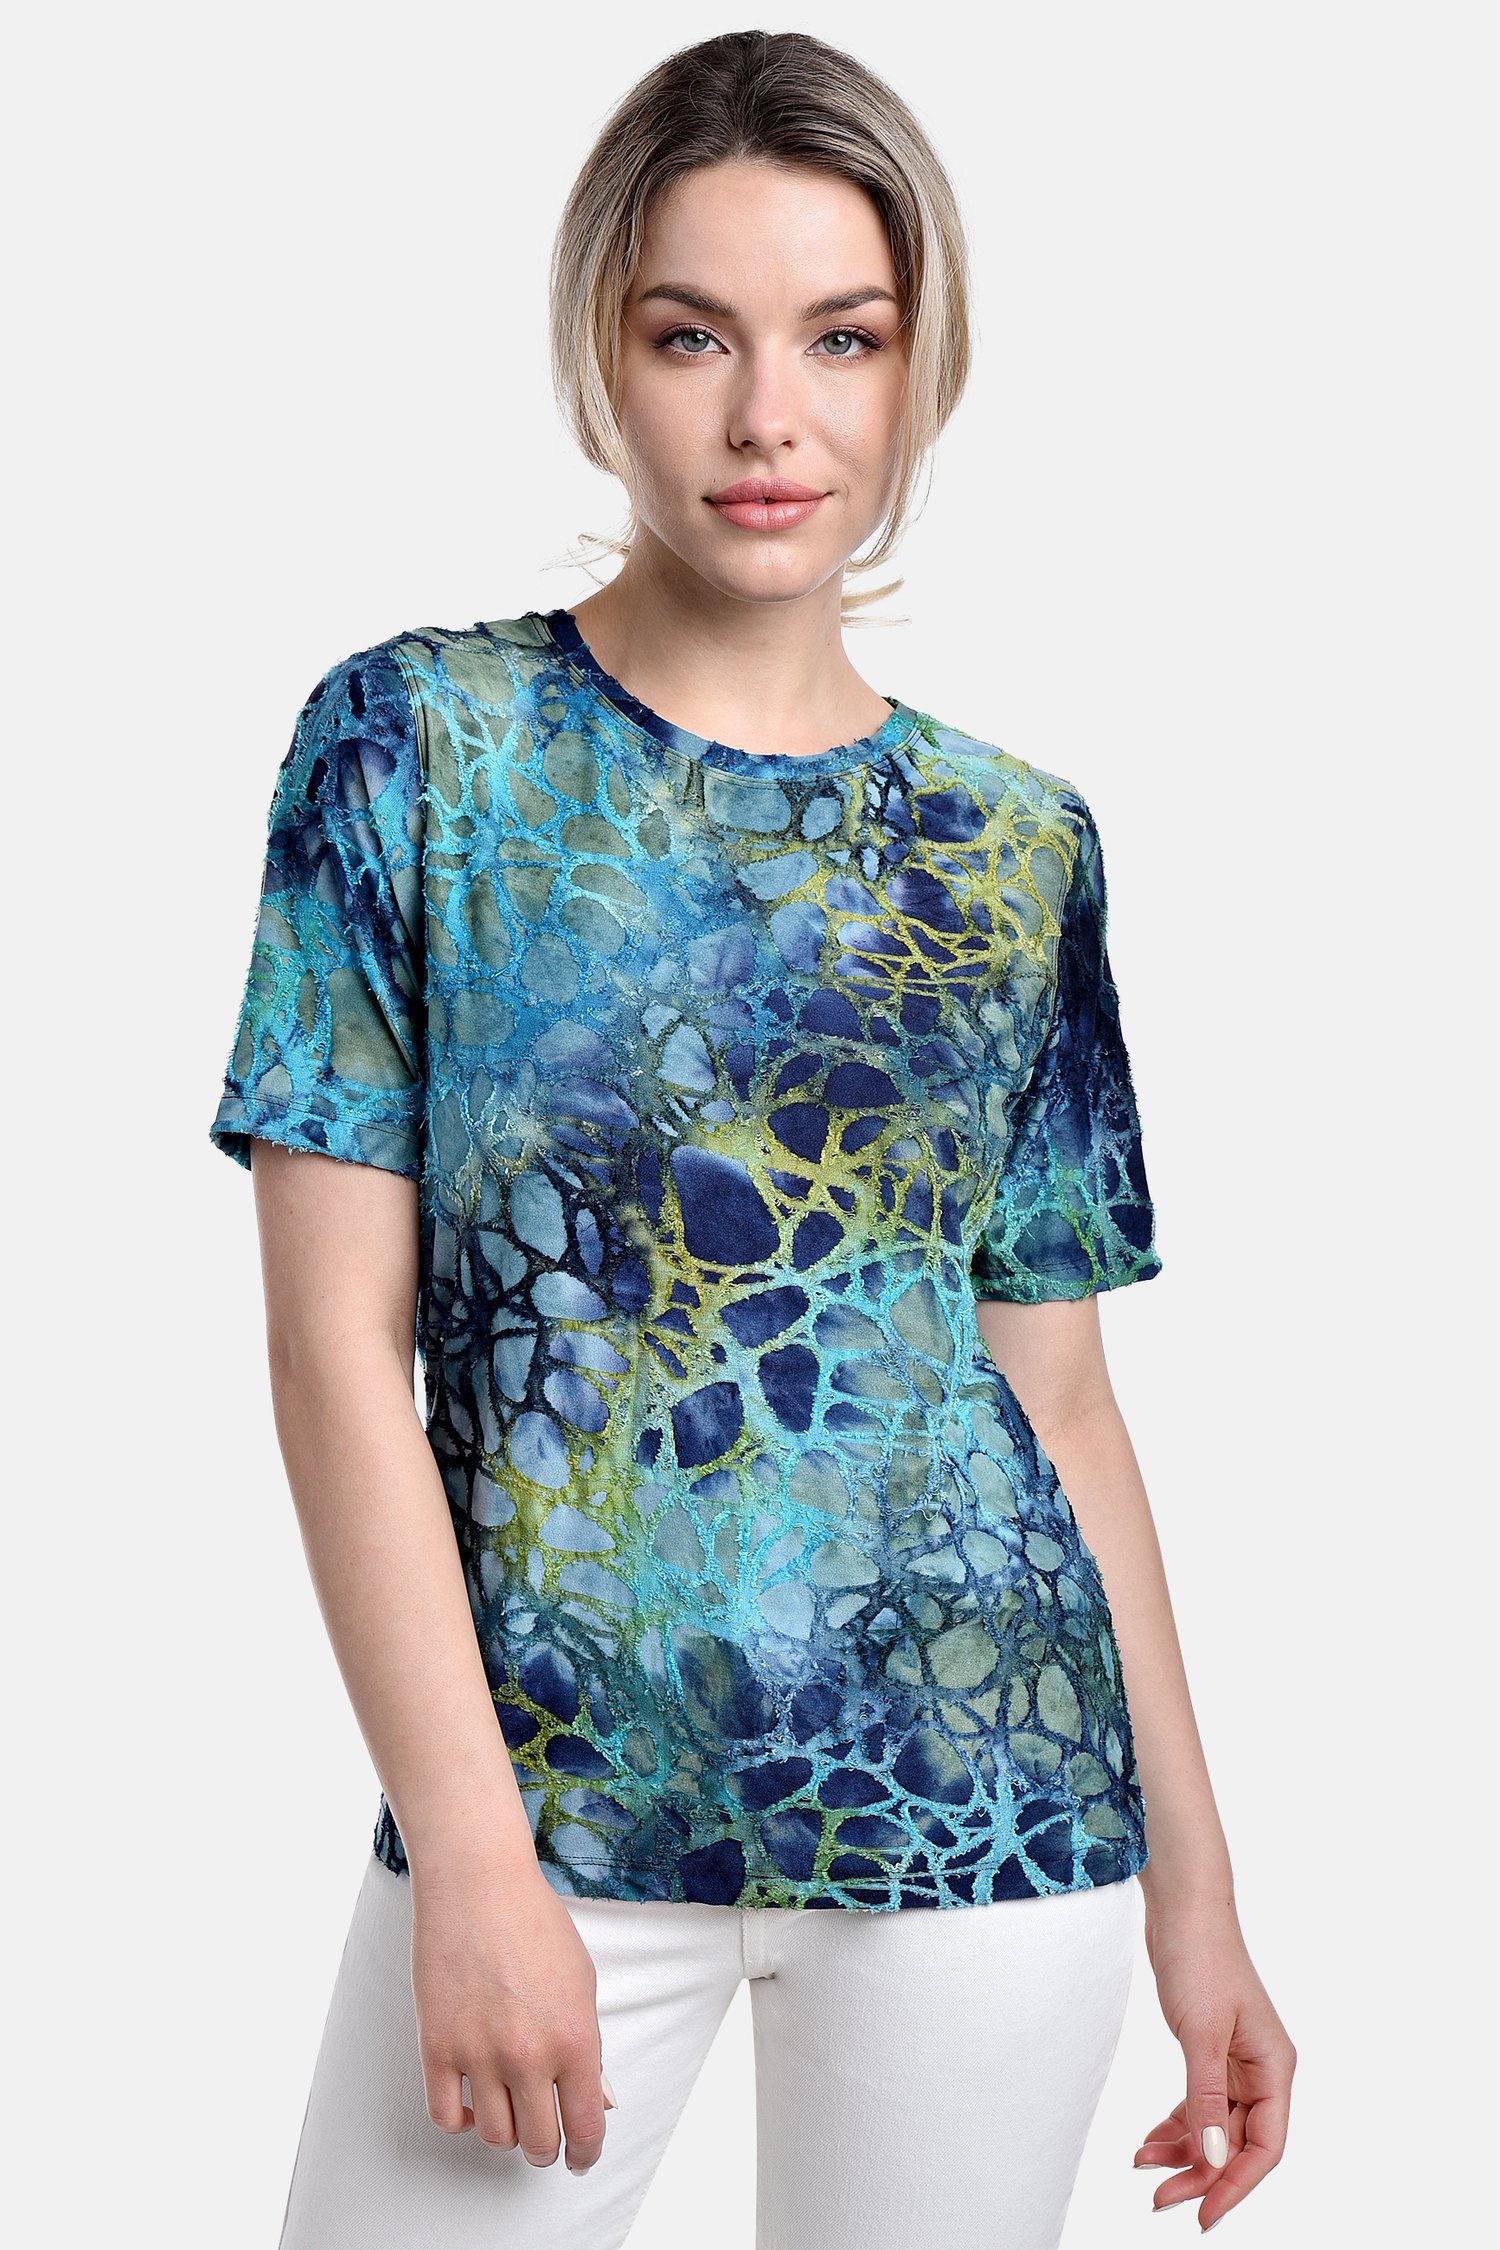 Blauwgroen T-shirt met opliggend motief van Bicalla voor Dames